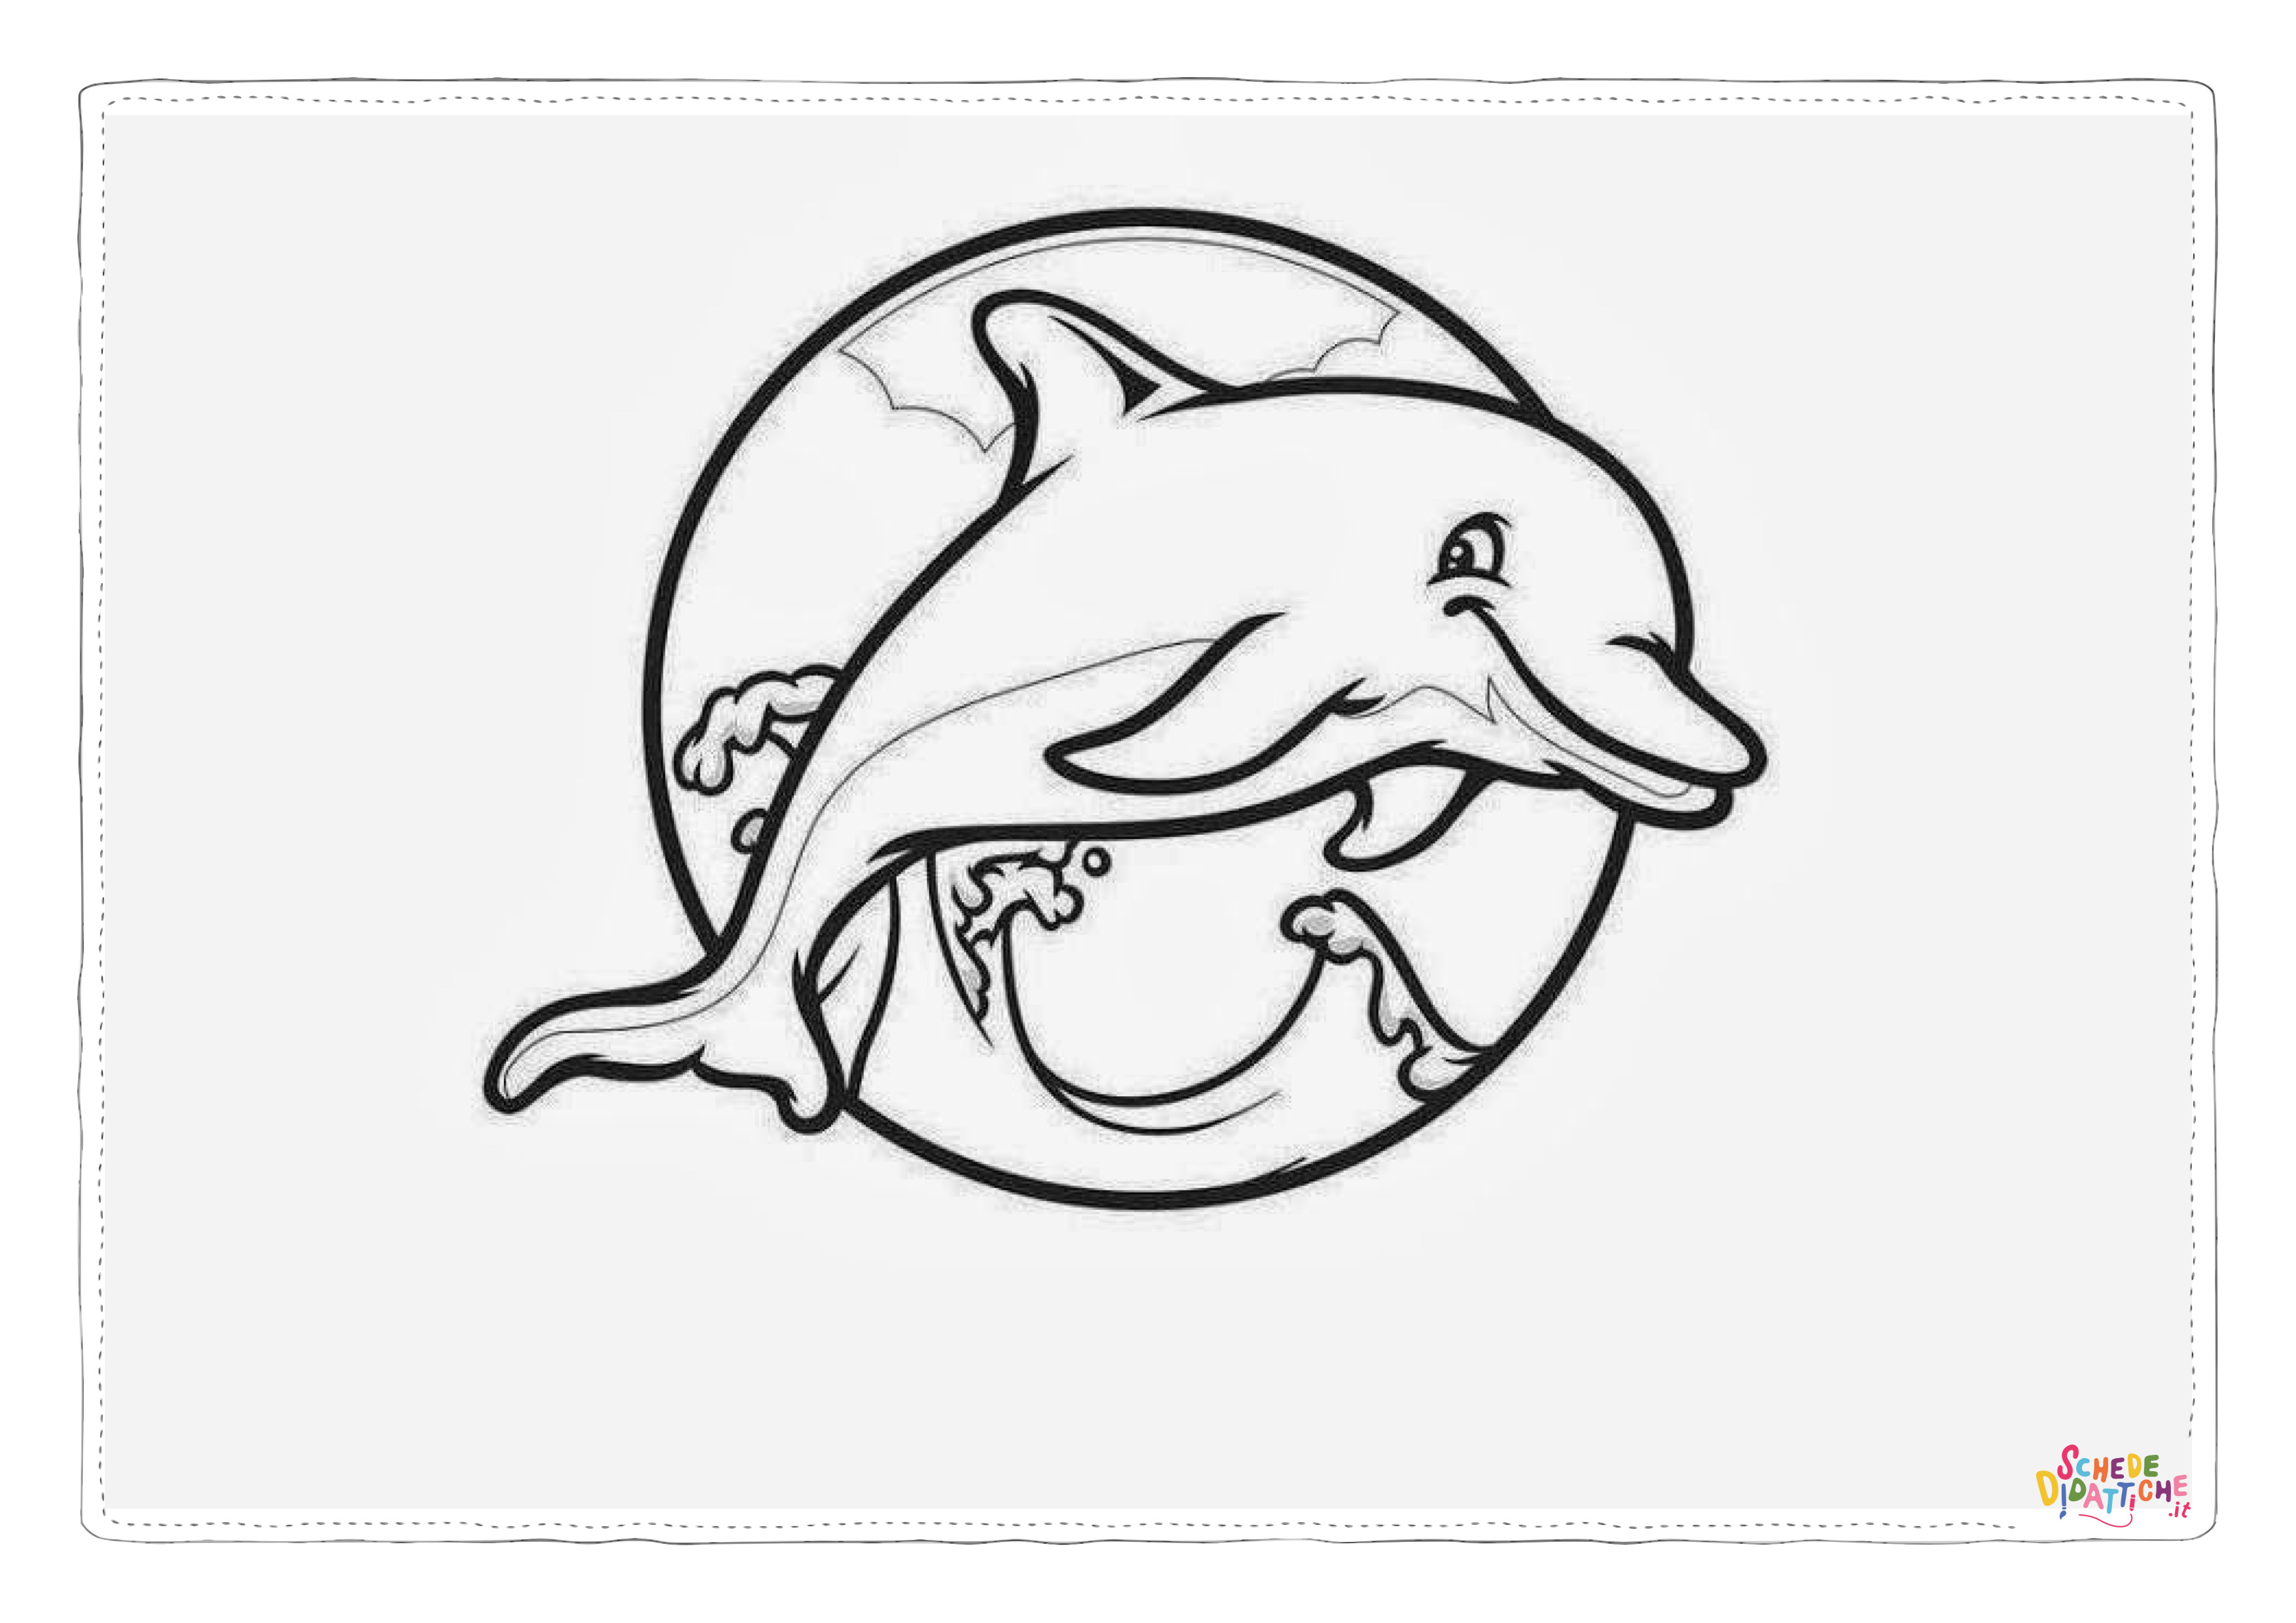 Disegno di delfino da stampare e colorare